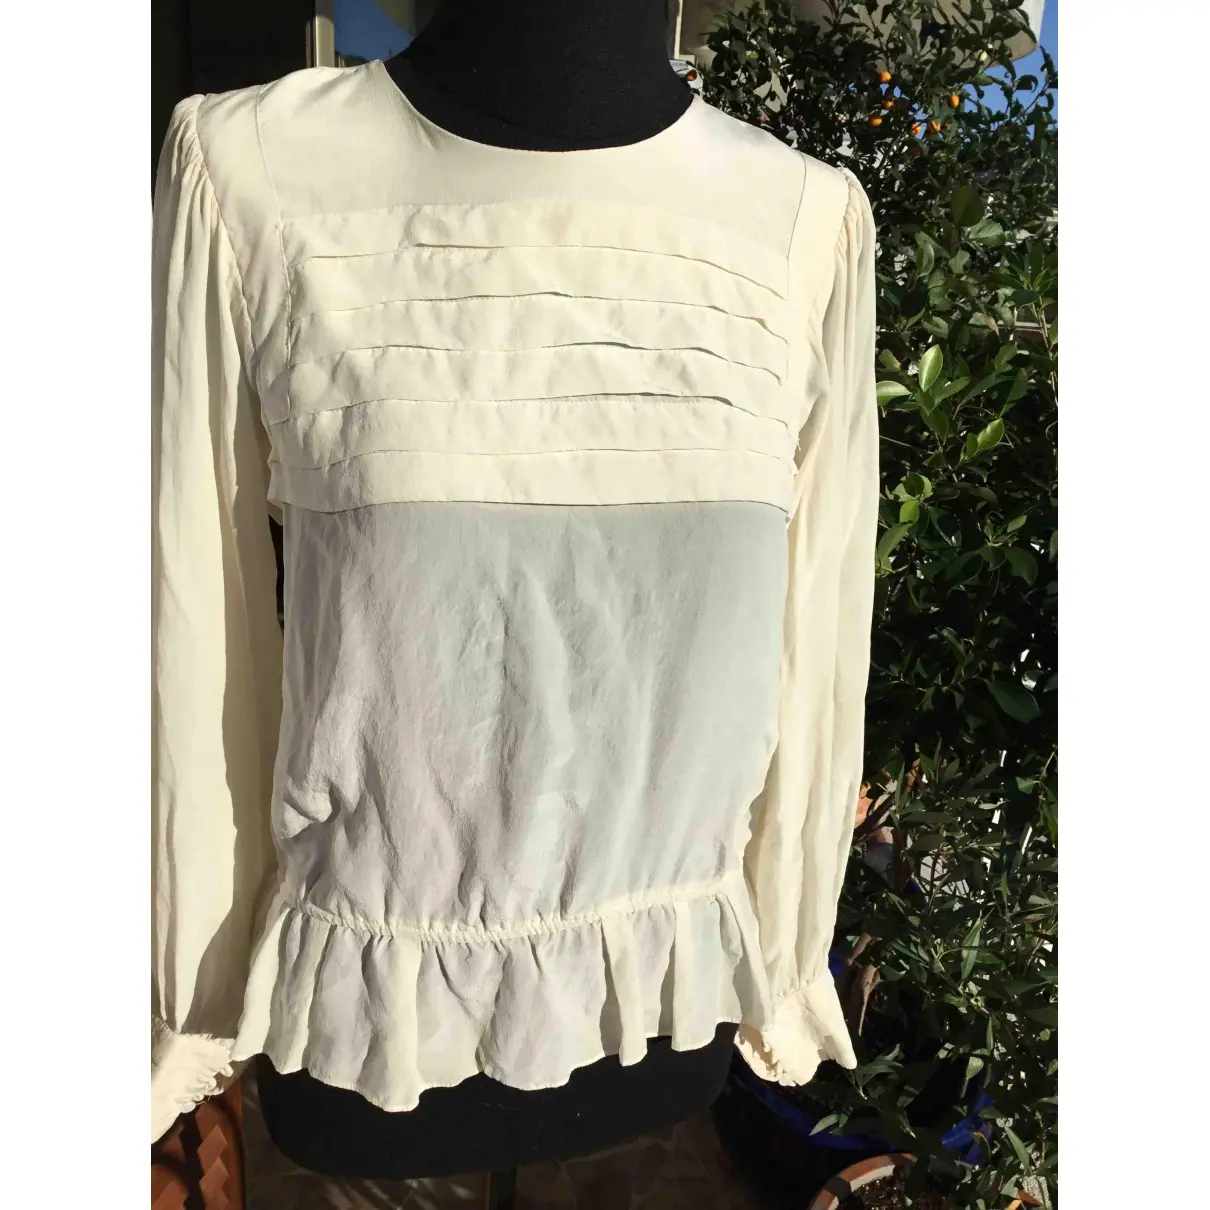 Buy Sandro Spring Summer 2019 silk blouse online